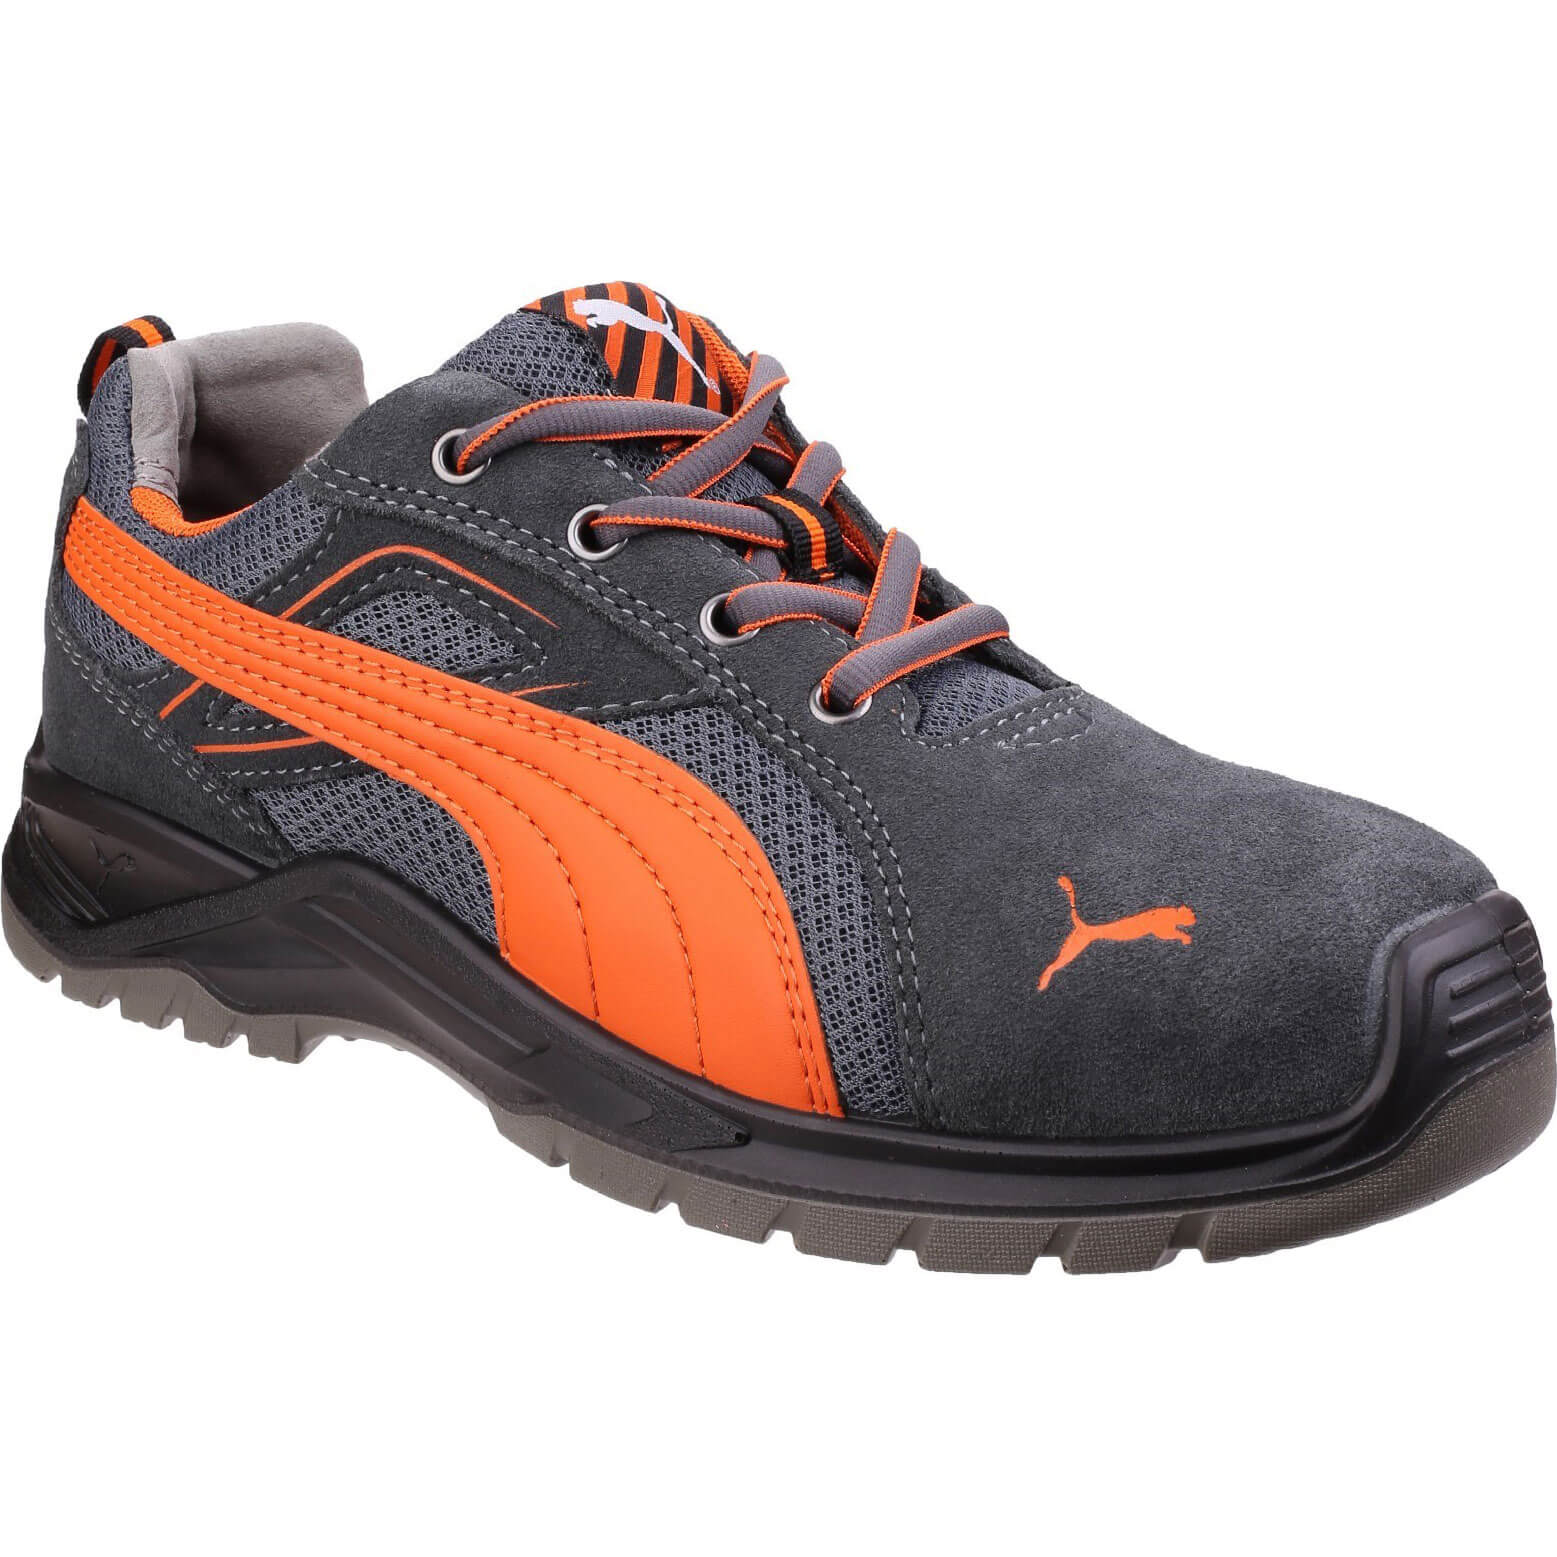 Image of Puma Safety Omni Sky Low Safety Shoe Orange Size 12